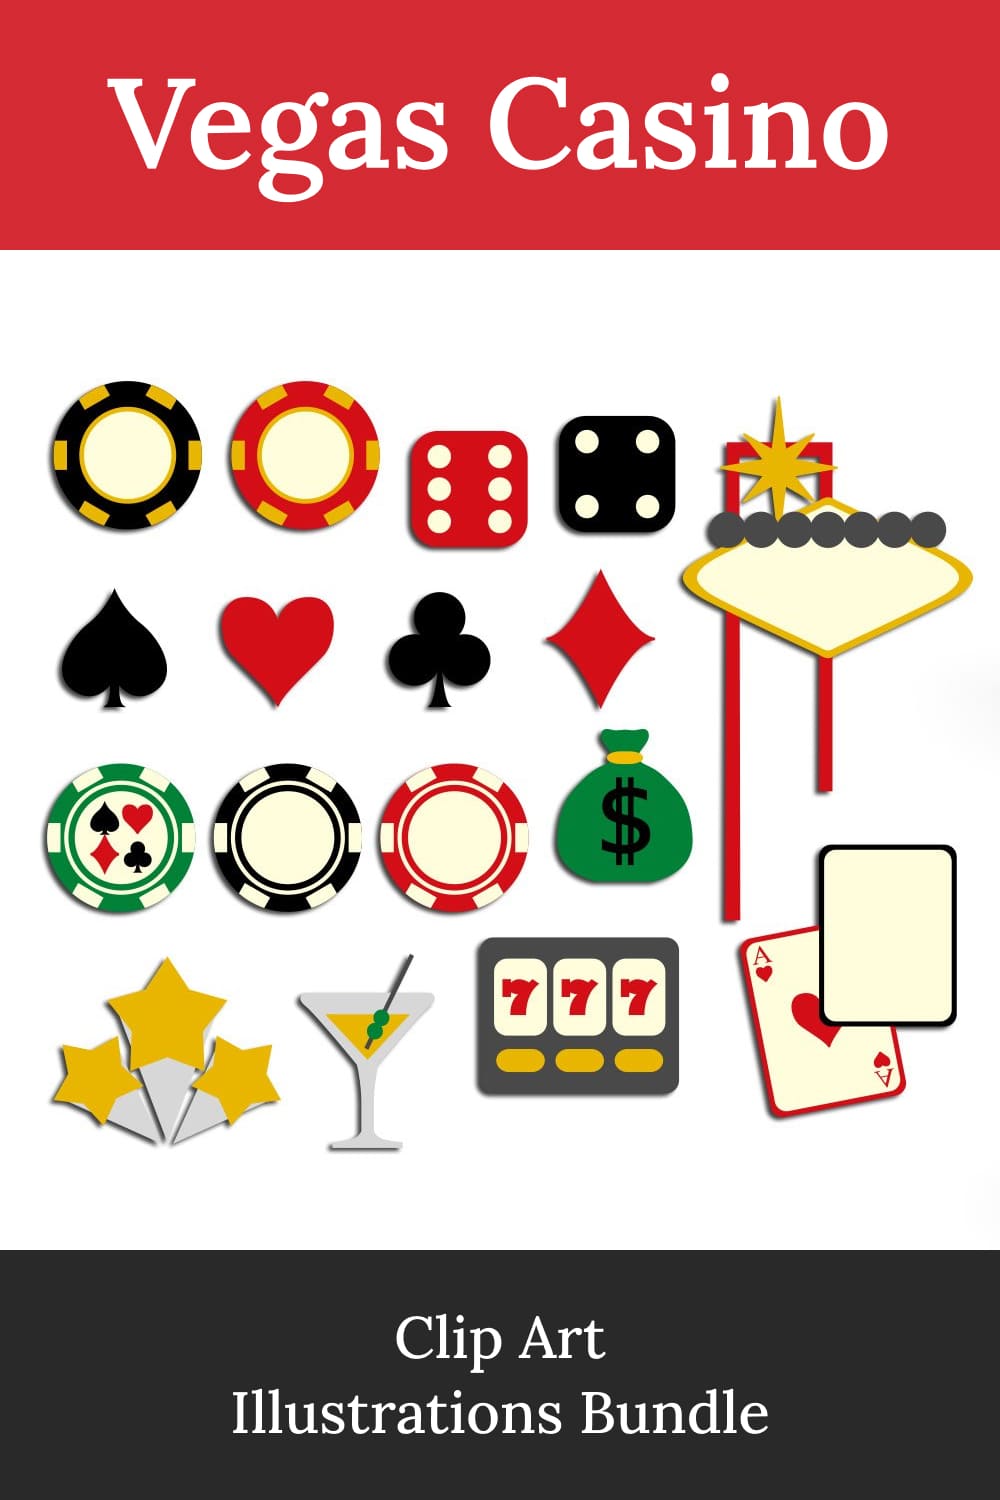 Vegas casino clip art illustrations bundle - pinterest image preview.